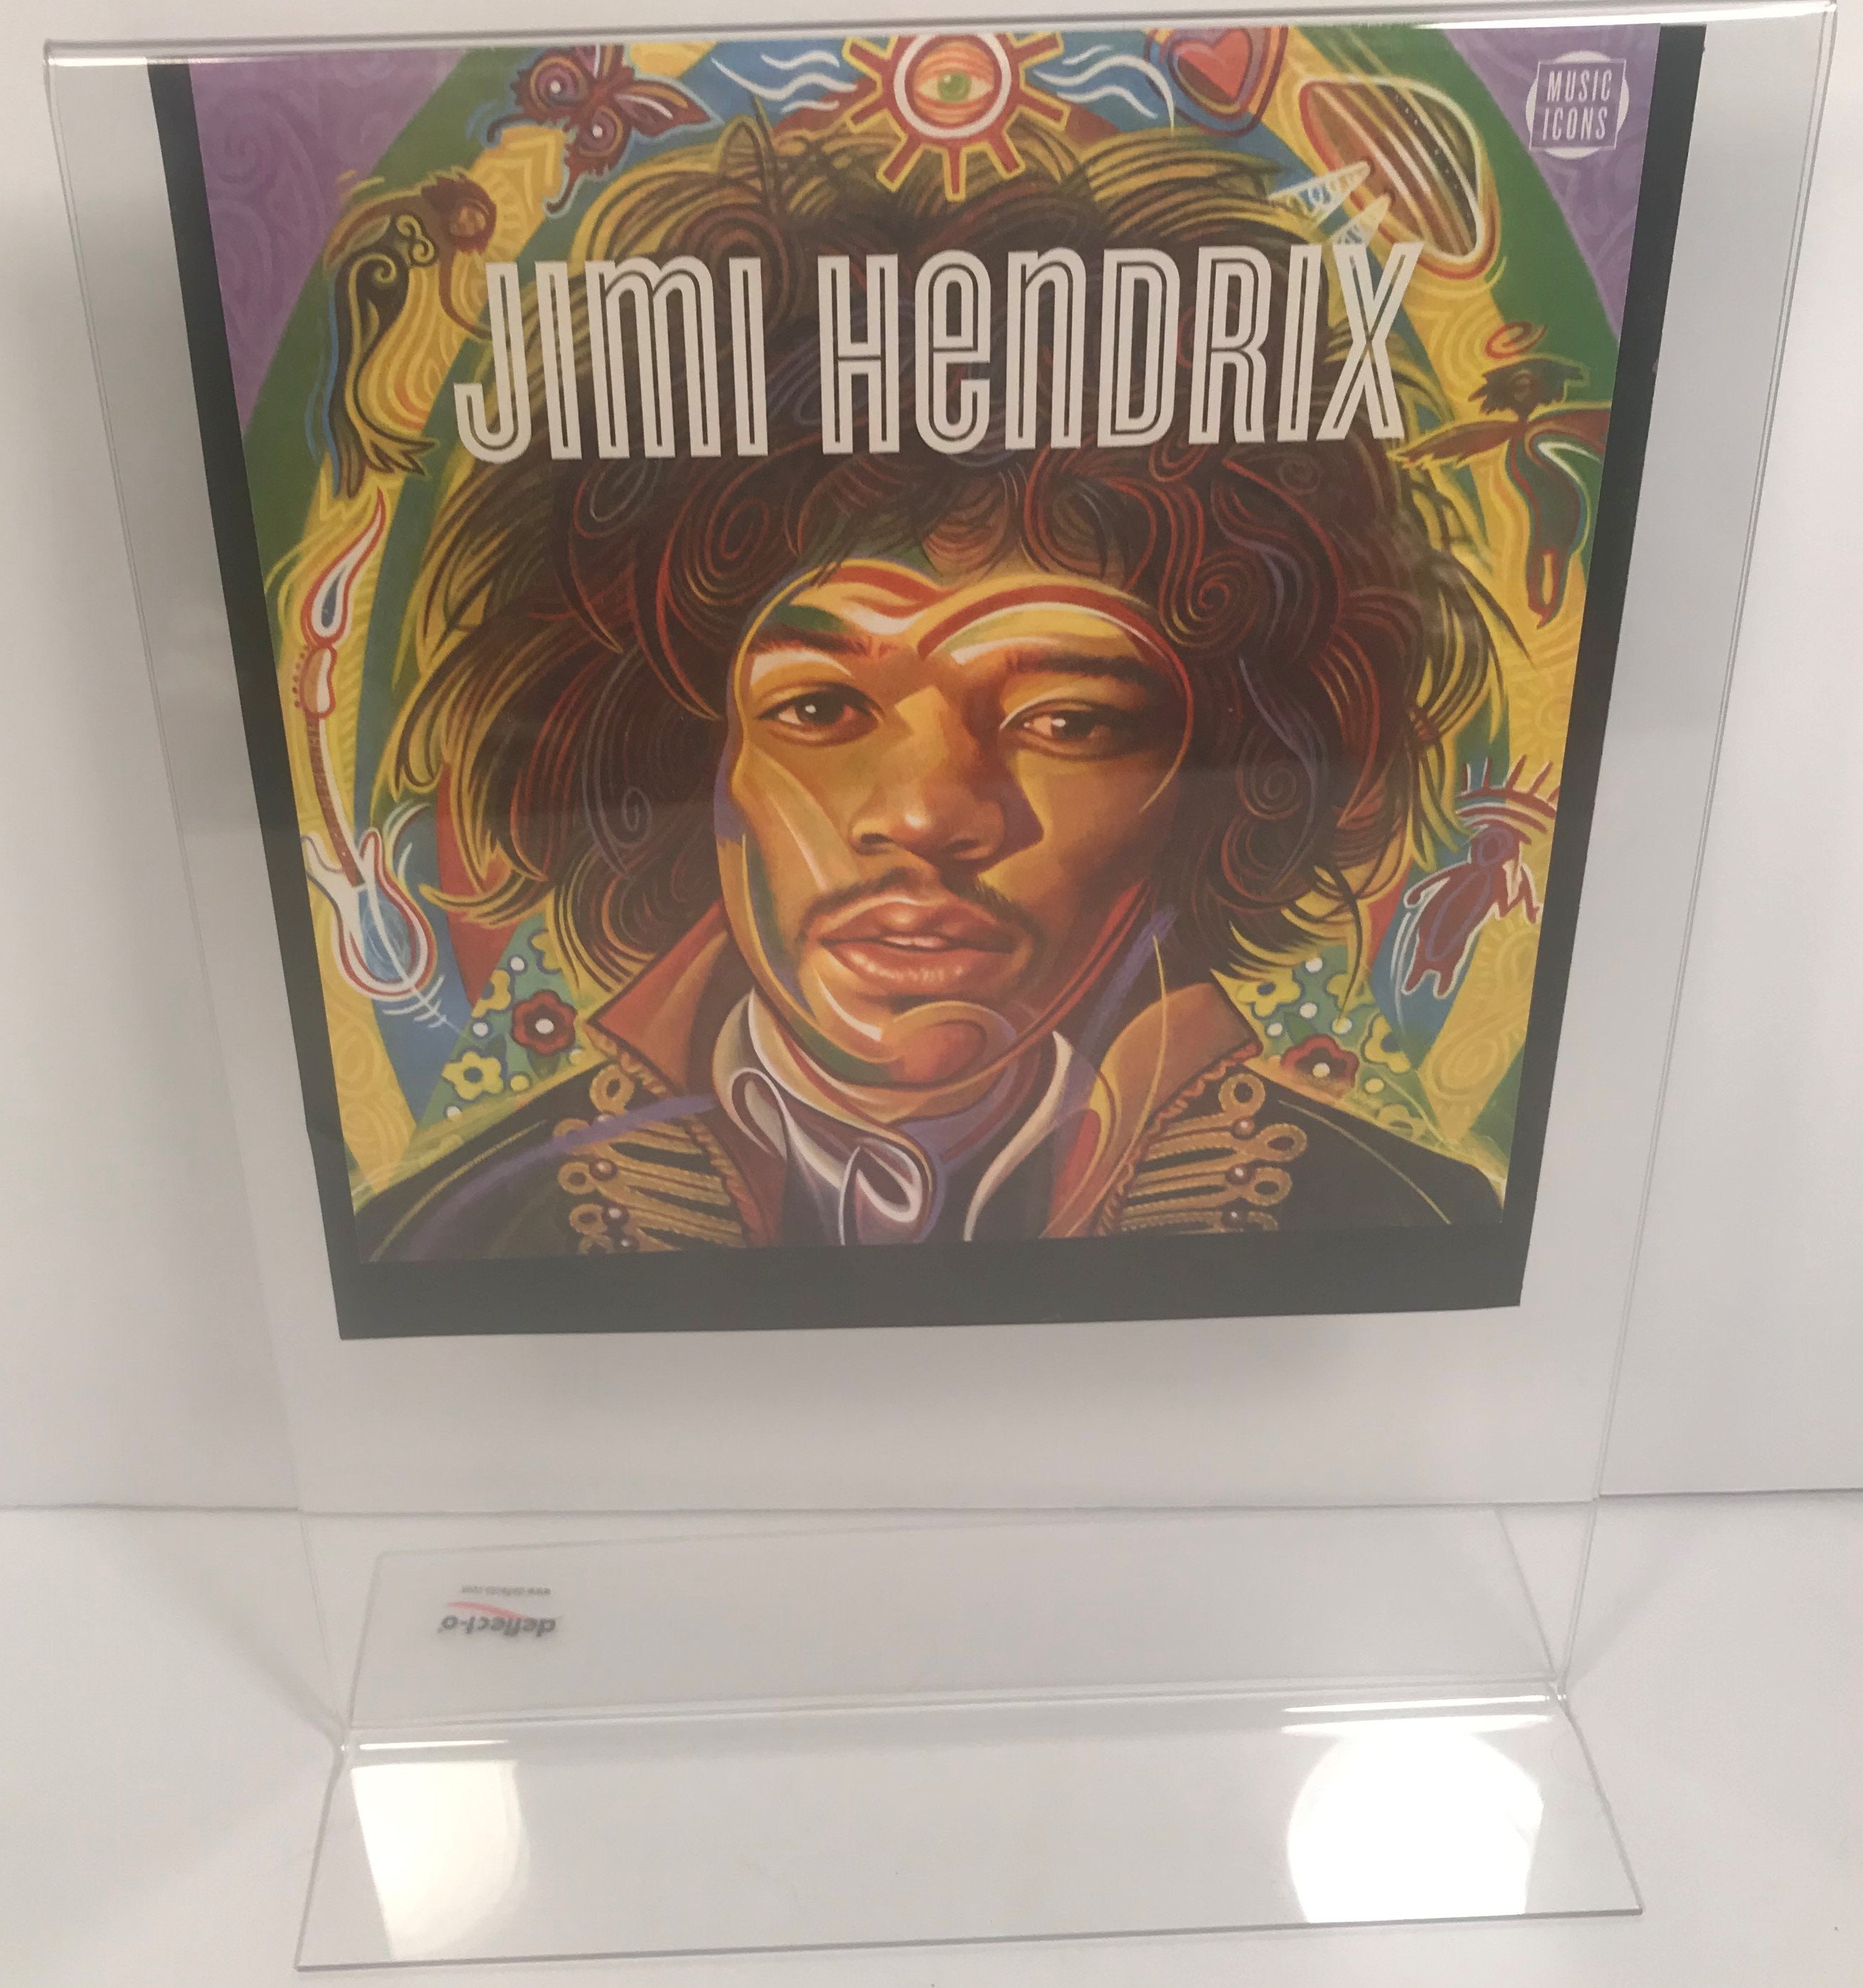 Vintage Handmade Jimi Hendrix Framed USPS Stamp Sheet With image